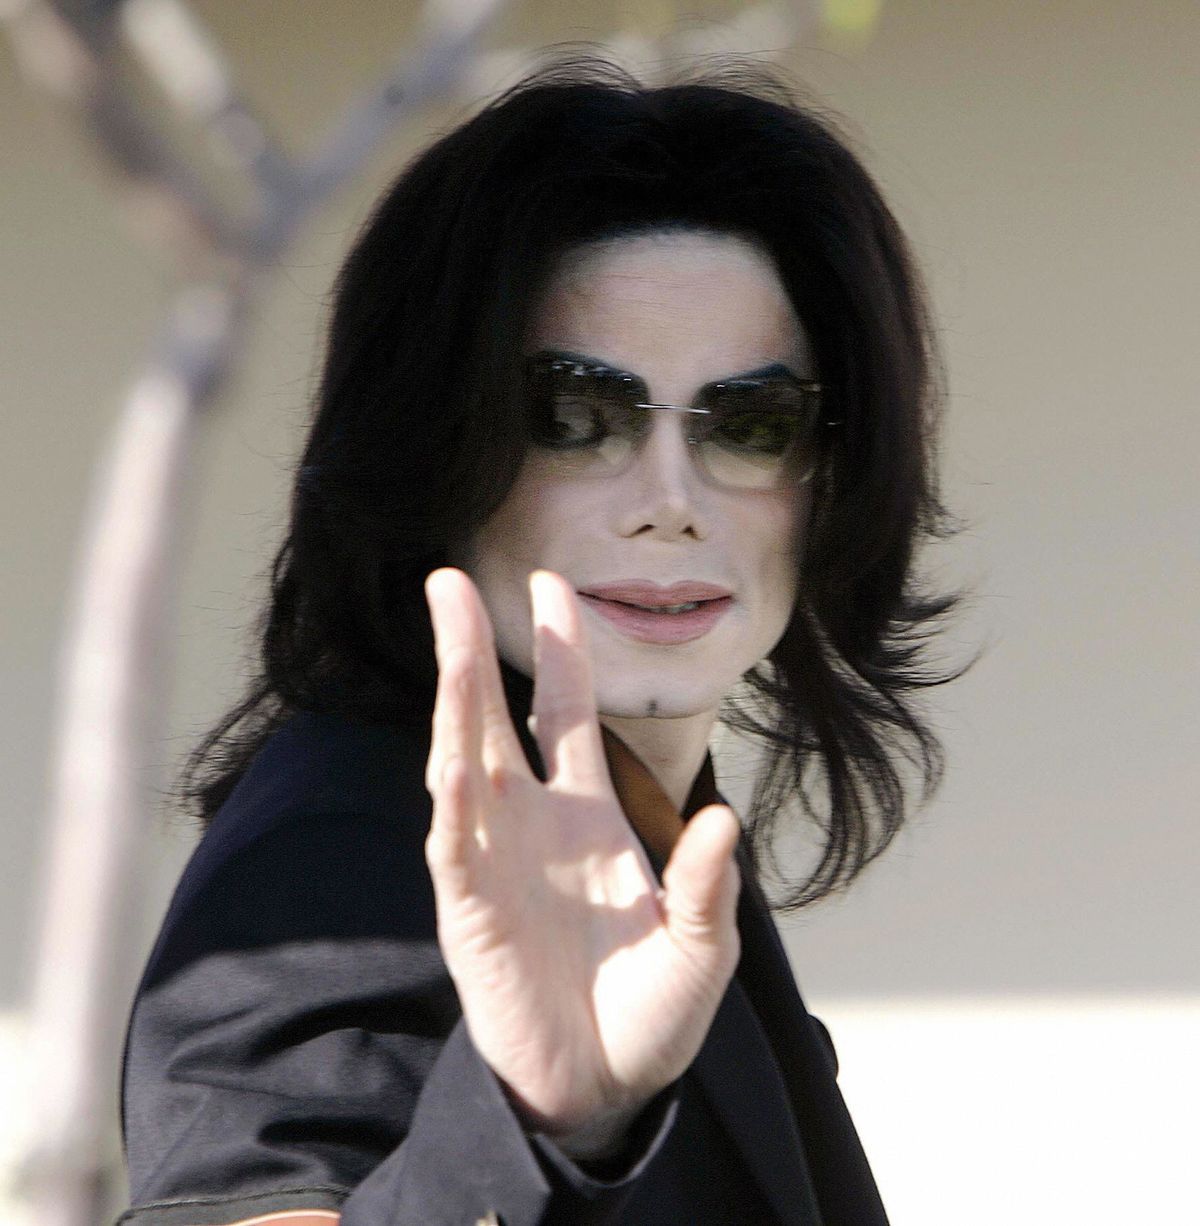 การต่อสู้ระหว่าง Michael Jackson Estate และ HBO ในเรื่อง 'Leaving Neverland' Doc ได้รับความน่าเกลียด